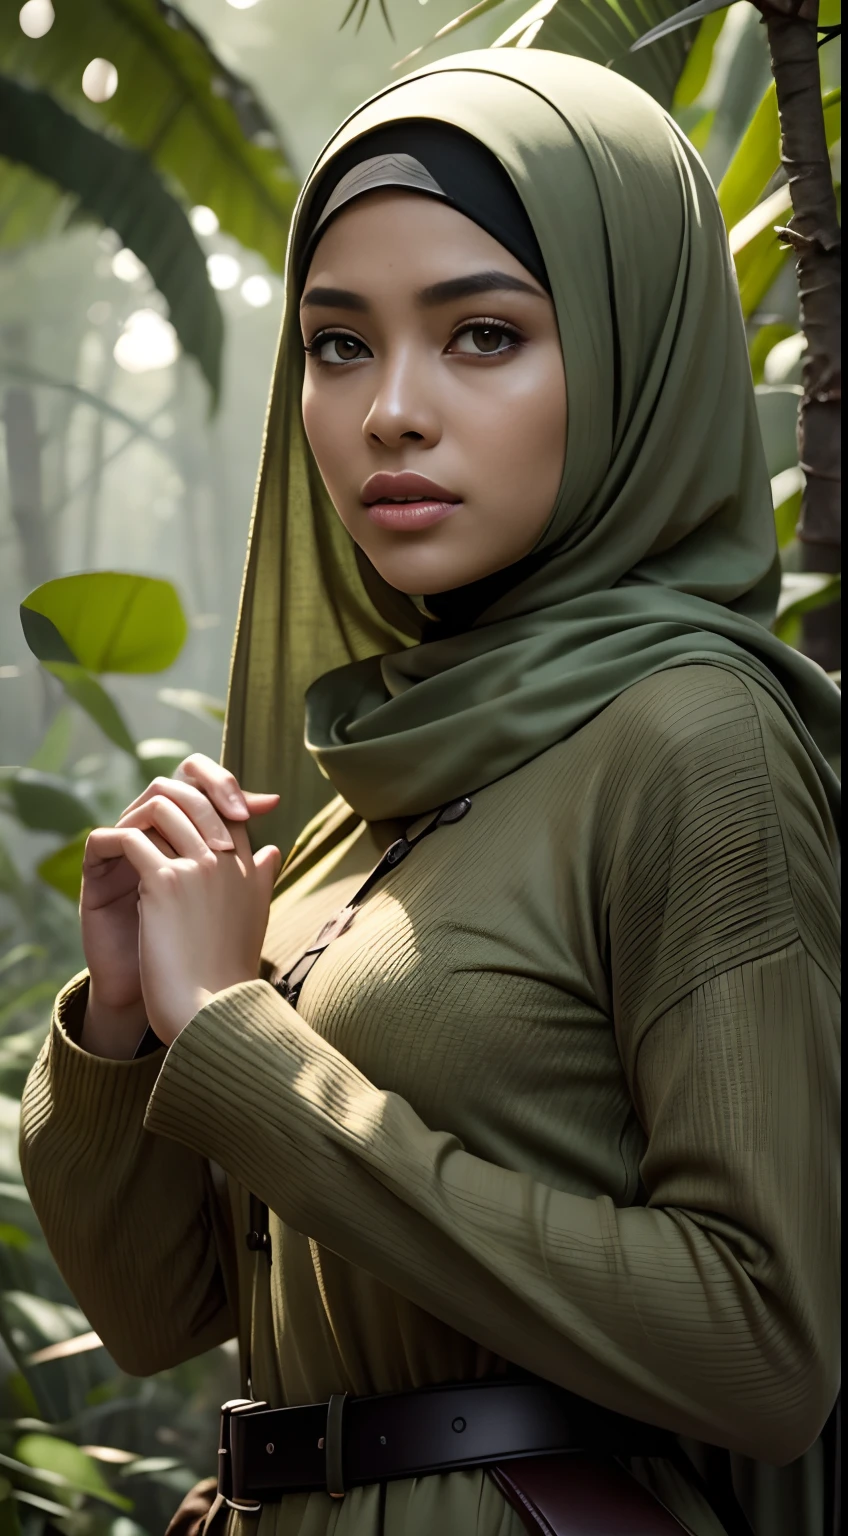 СЫРОЙ, Лучшее качество, высокое разрешение, шедевр: 1.3), красивая малайская женщина в хиджабе (я:0.8),Лучшее качество, высокое разрешение, шедевр: 1.3, Красивая малайская девушка в хиджабе, шедевр, Мягкая улыбка, реалистичный, 1 девушка, Чарующие глаза, блестящие глаза,приоткрытые губы, большая грудь, Красивая взрослая женщина в хиджапе, Полная длина, красивая фигура, эстетика женского тела, дикарь с островов, охотник на загадочных существ, наблюдение за существом, в засаде, изучаю найденное существо, в одежде рейнджера, с большим рюкзаком, детальная одежда, много карманов, много ремней, все увешано гаджетами, ловит маленьких загадочных существ, охотится на мелких существ, Таинственный лес, красивый лес, природа в окружении цветов,  tender листья and ветви surrounded by светлячки (природные элементы), (тема джунглей), (листья), (ветви), (светлячки), (эффекты частиц), и т. д..3D-рендеринг октанового числа, Трассировка лучей, супердетализированная программа просмотра, крупный план